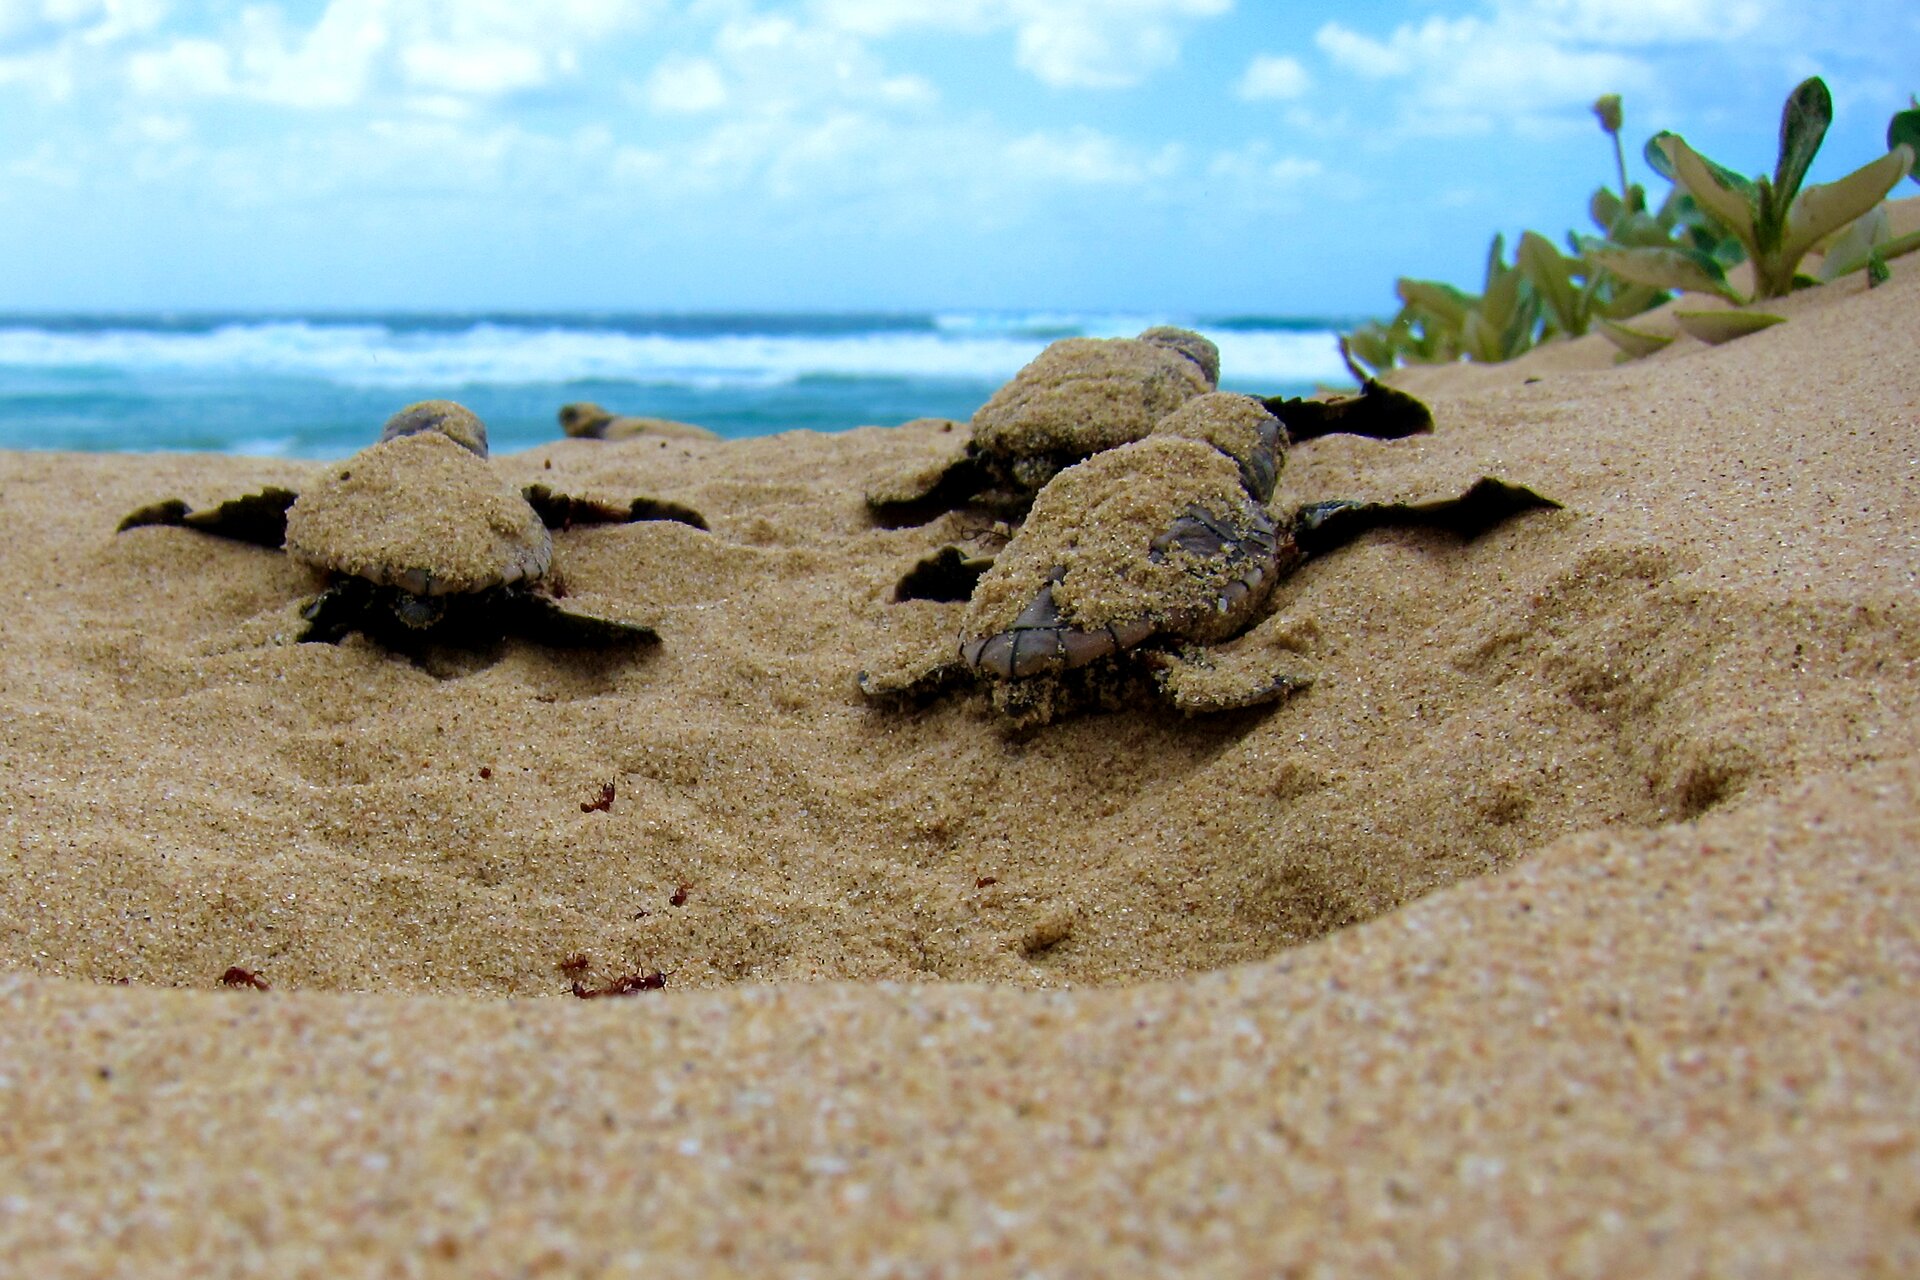 Na fotografii widoczne są malutkie, nowo wyklute żółwie wygrzebujące się z piasku na plaży. W tle widać fale oceanu.